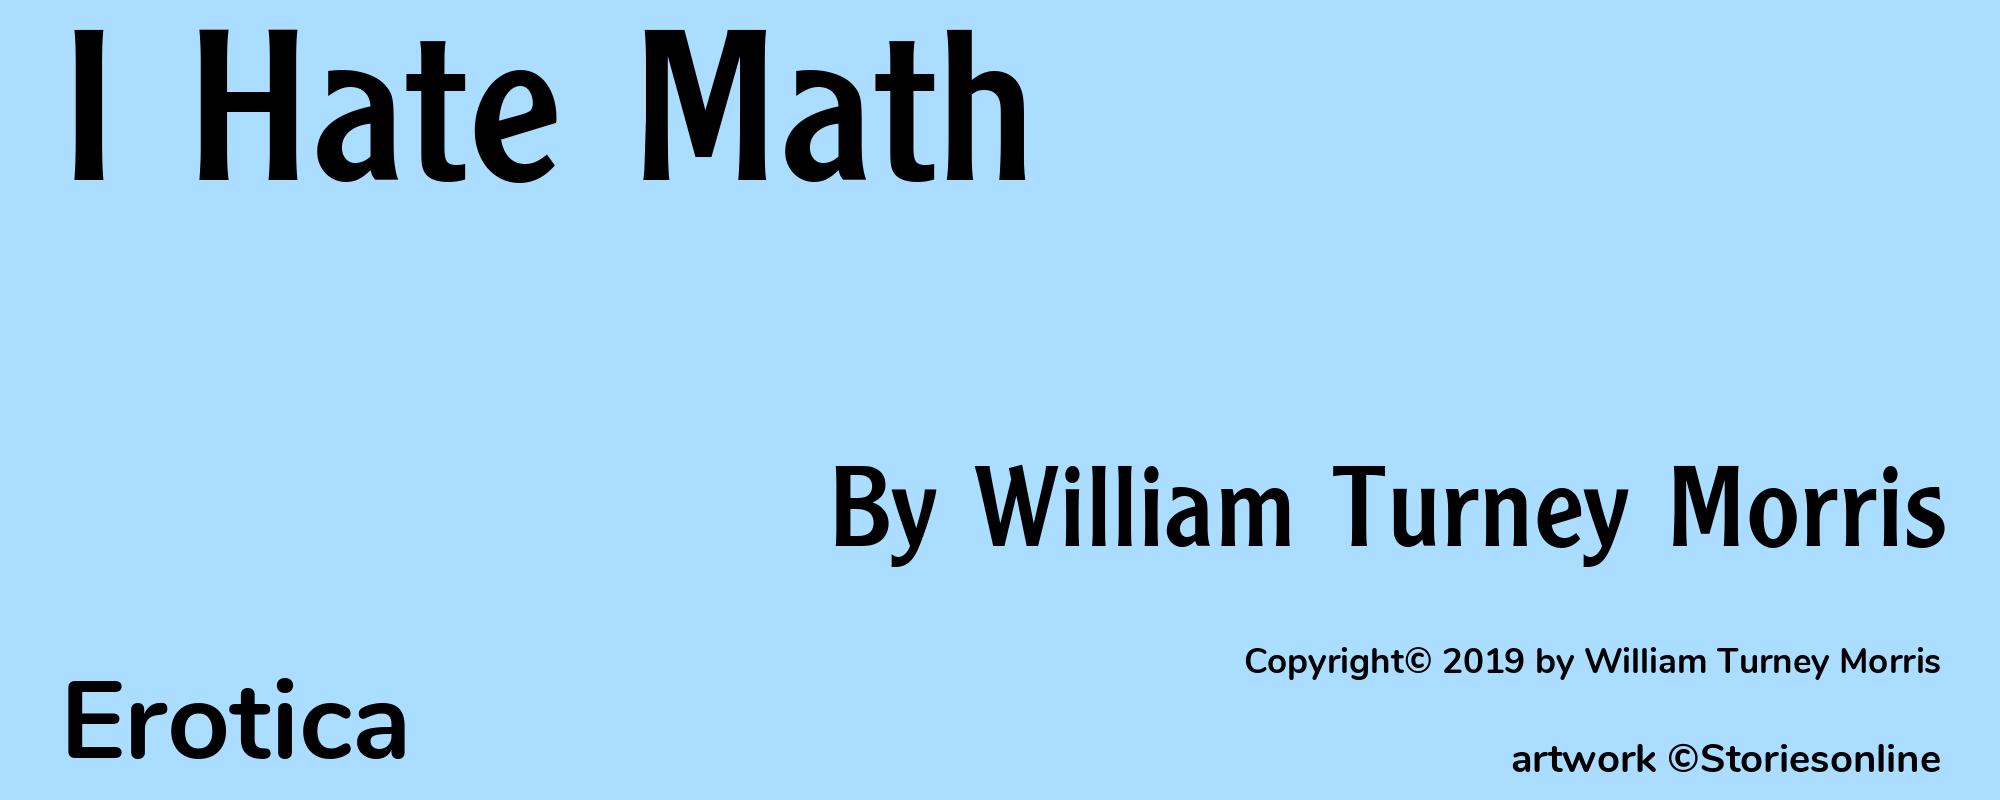 I Hate Math - Cover